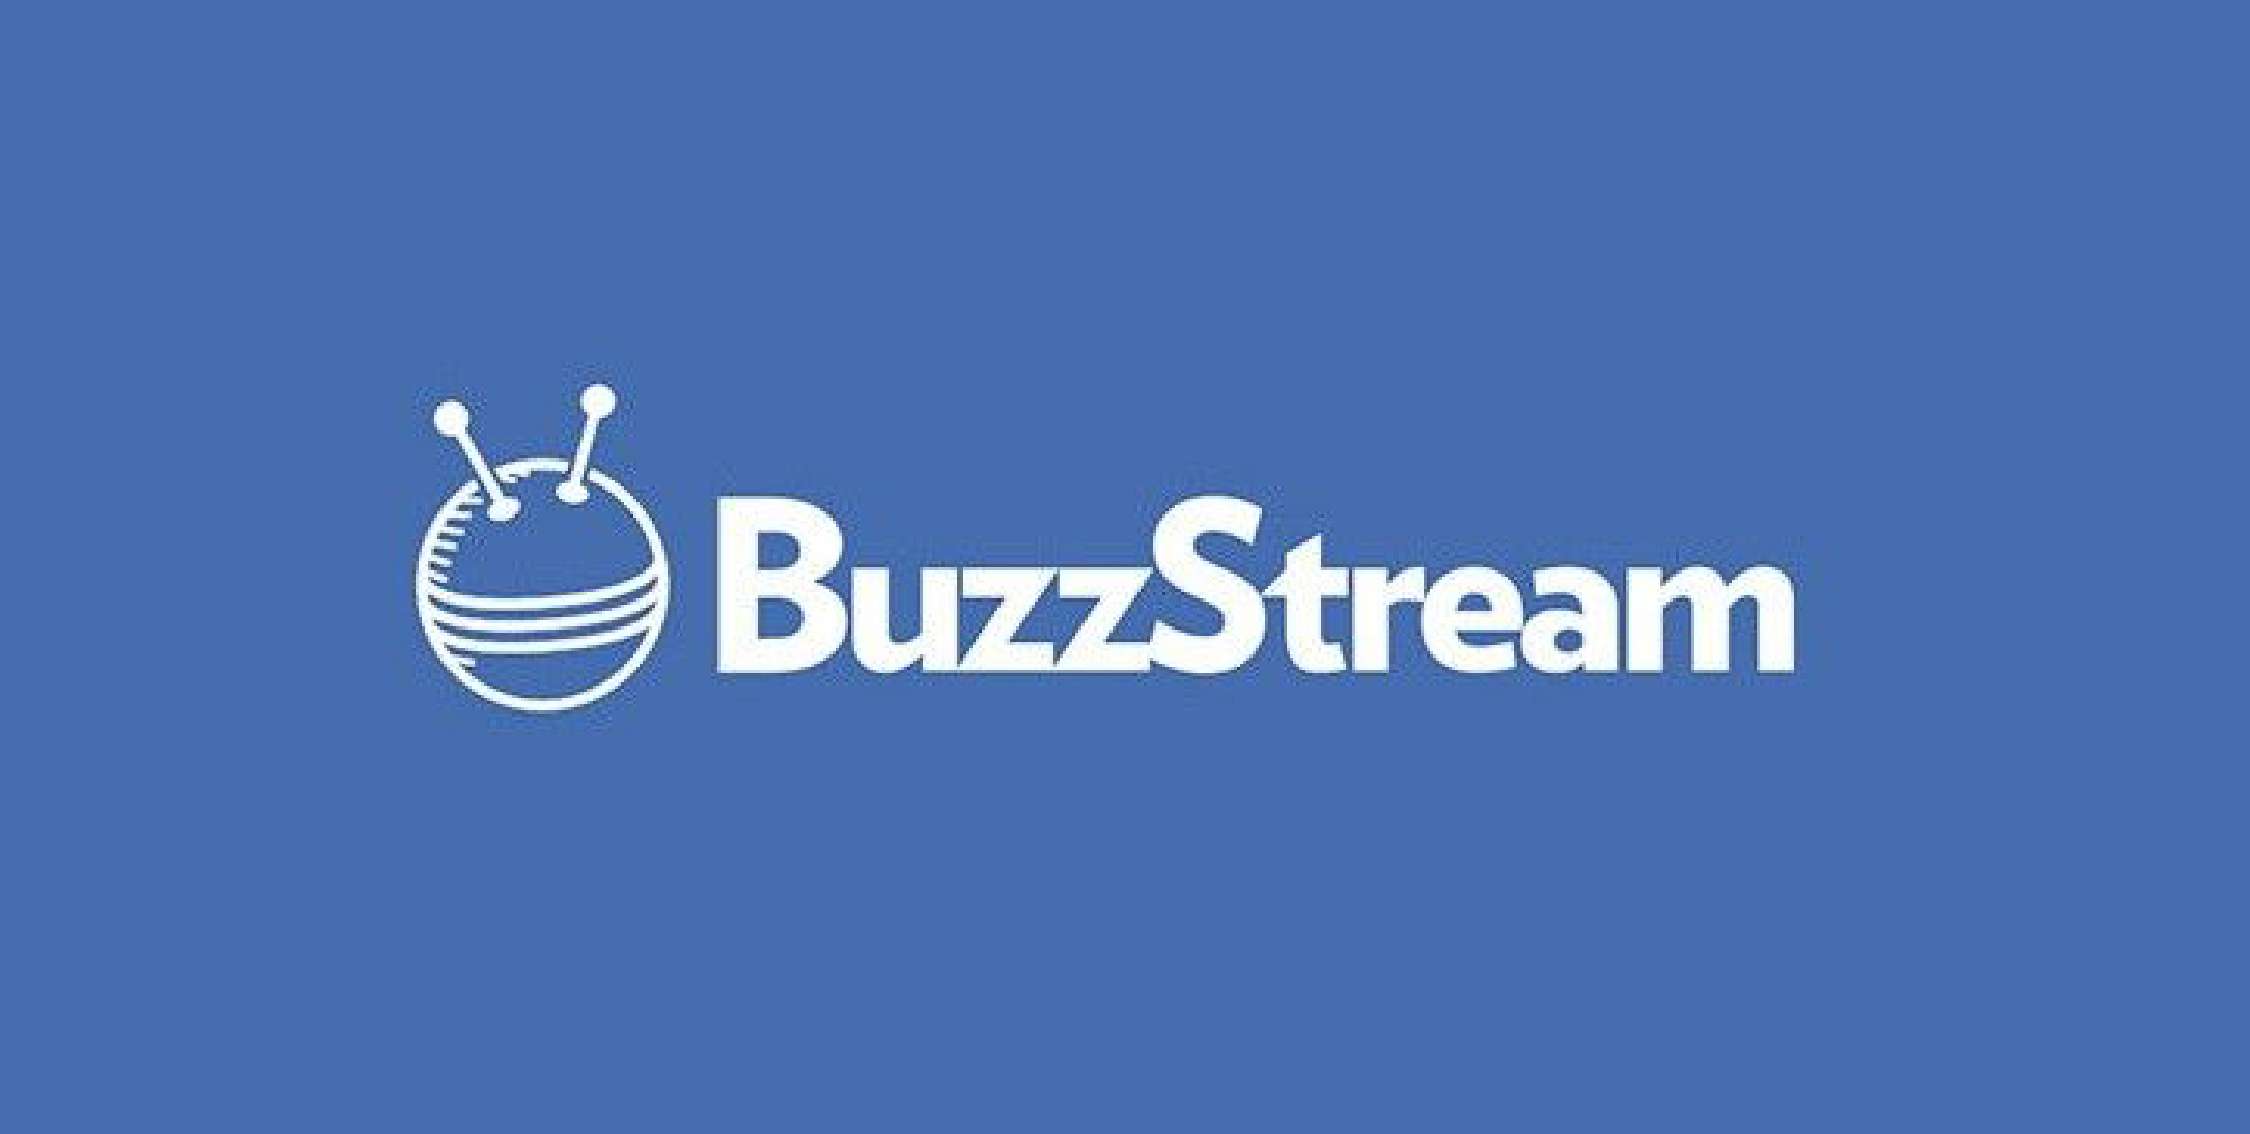 Buzzstream demand generation tools